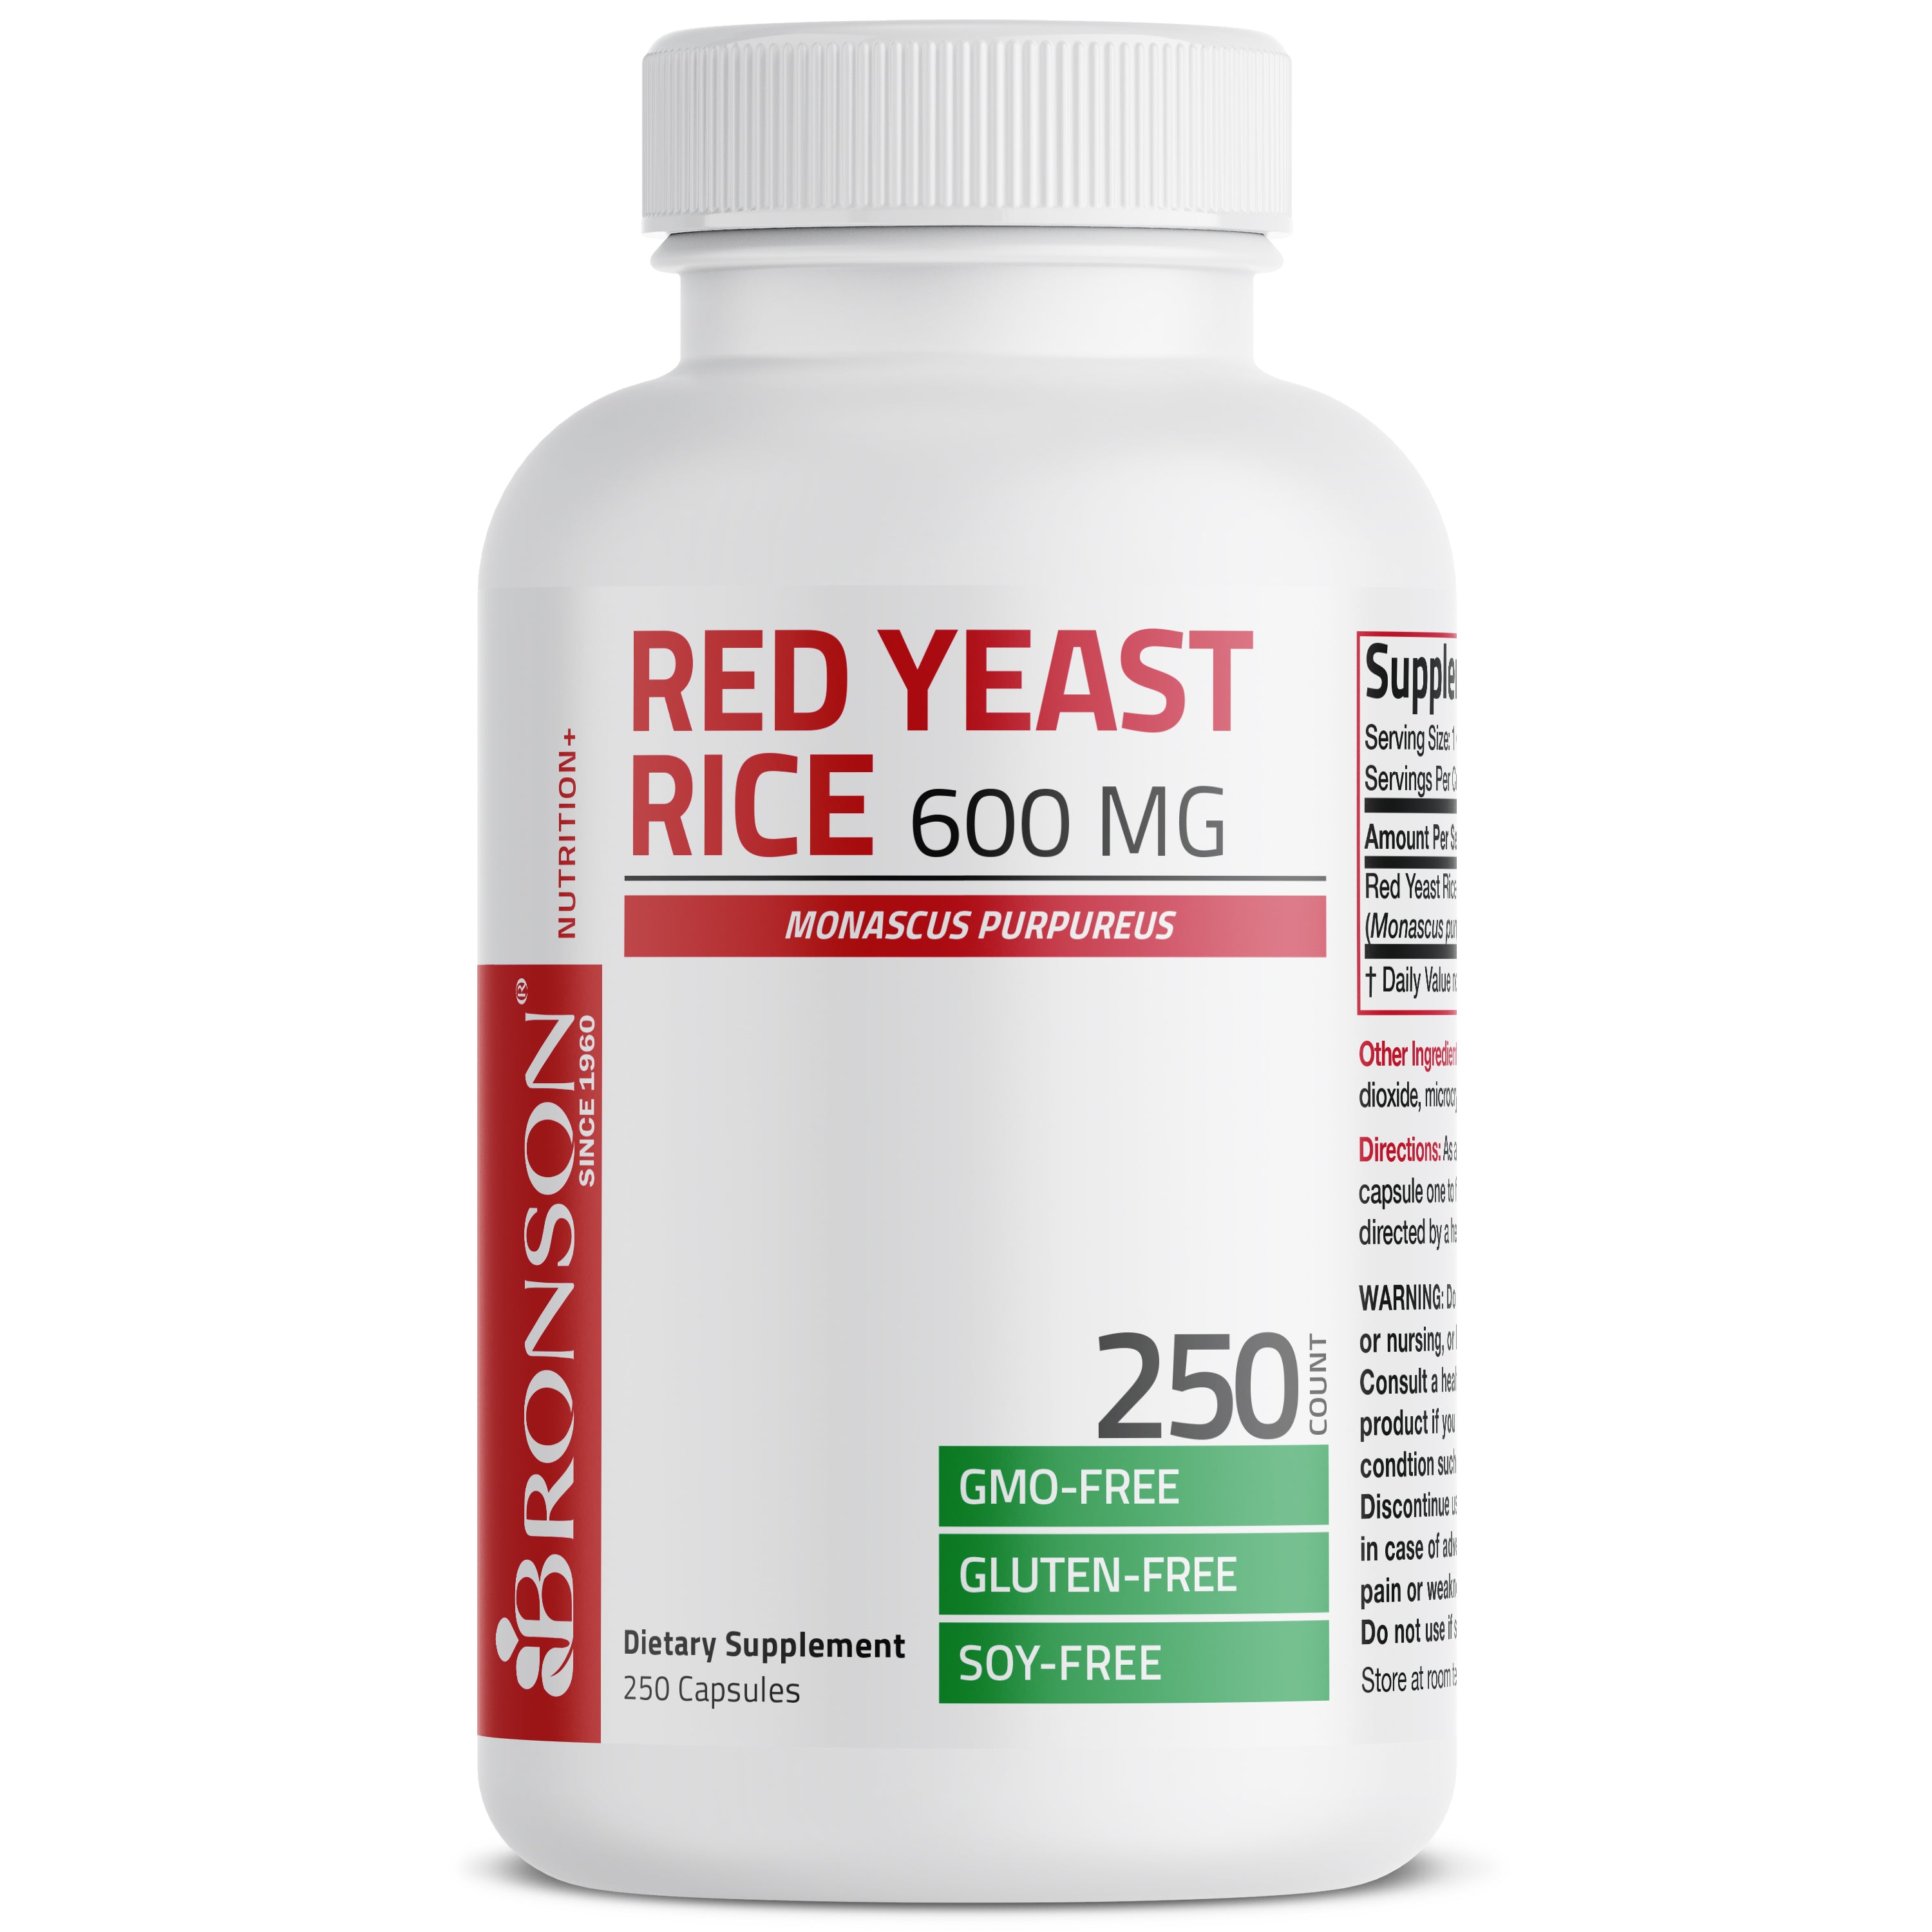 Red Yeast Rice 600 MG